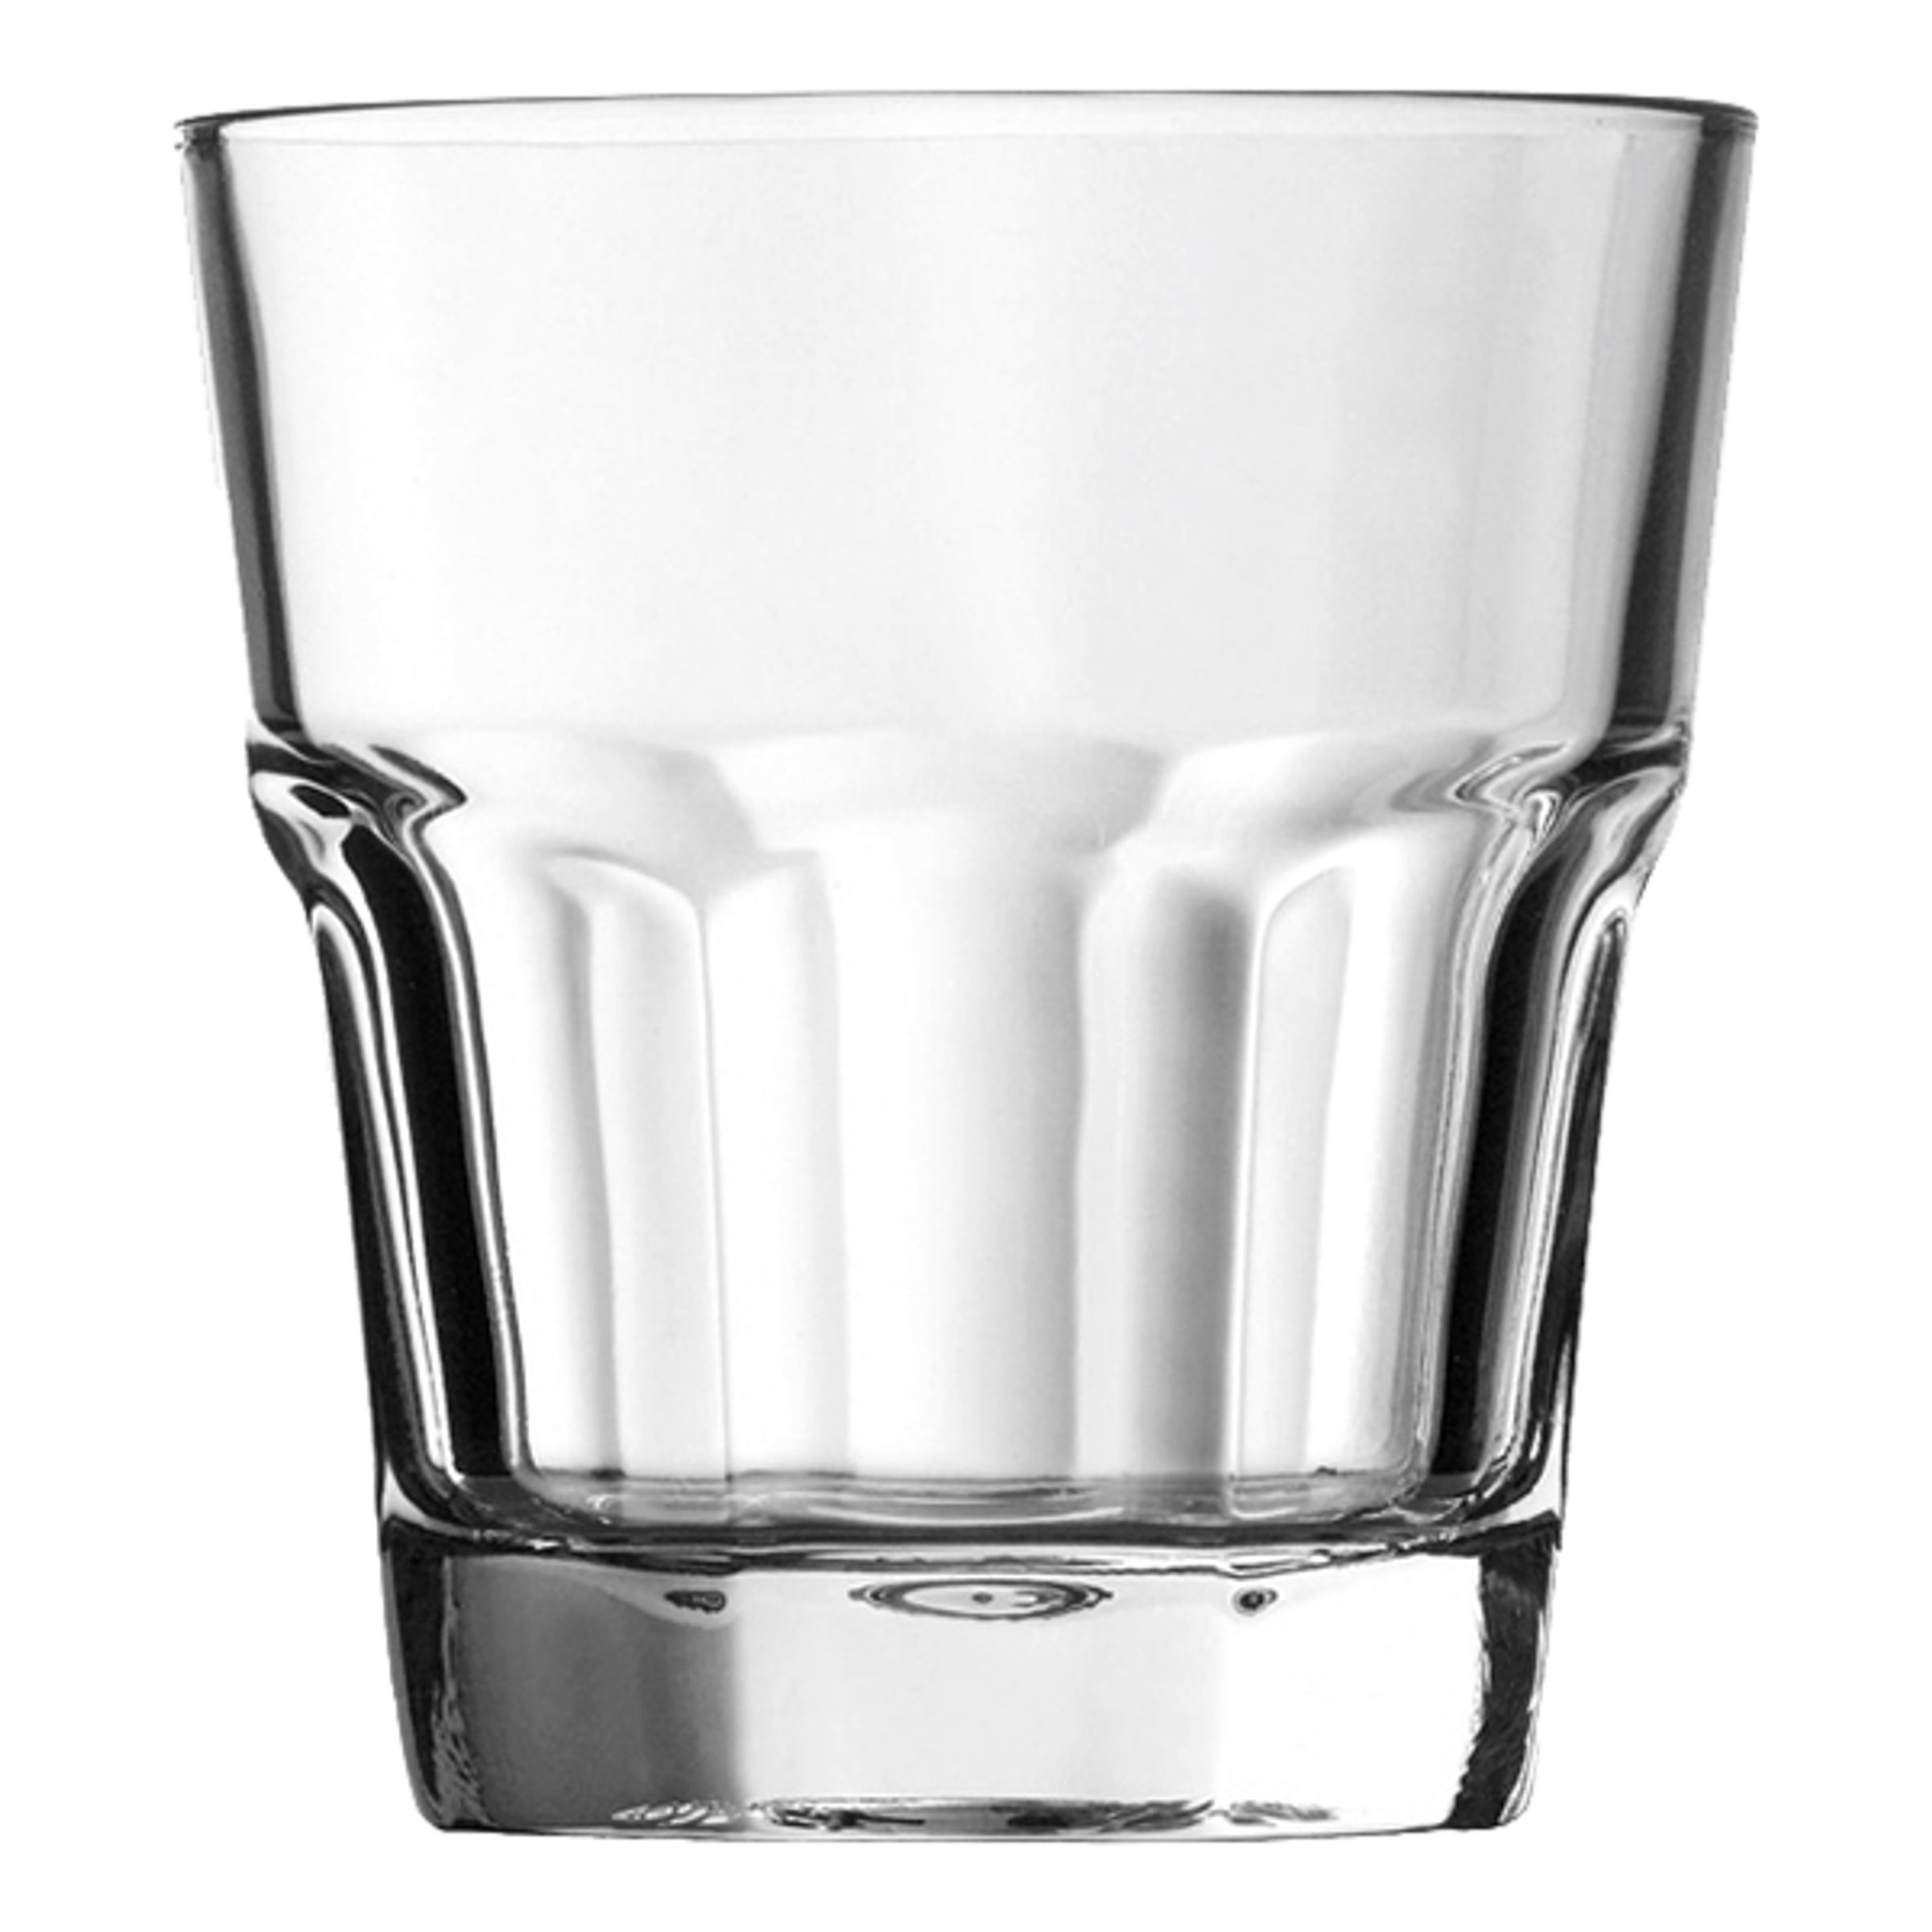 Casablanca Whiskyglas - 12-pack